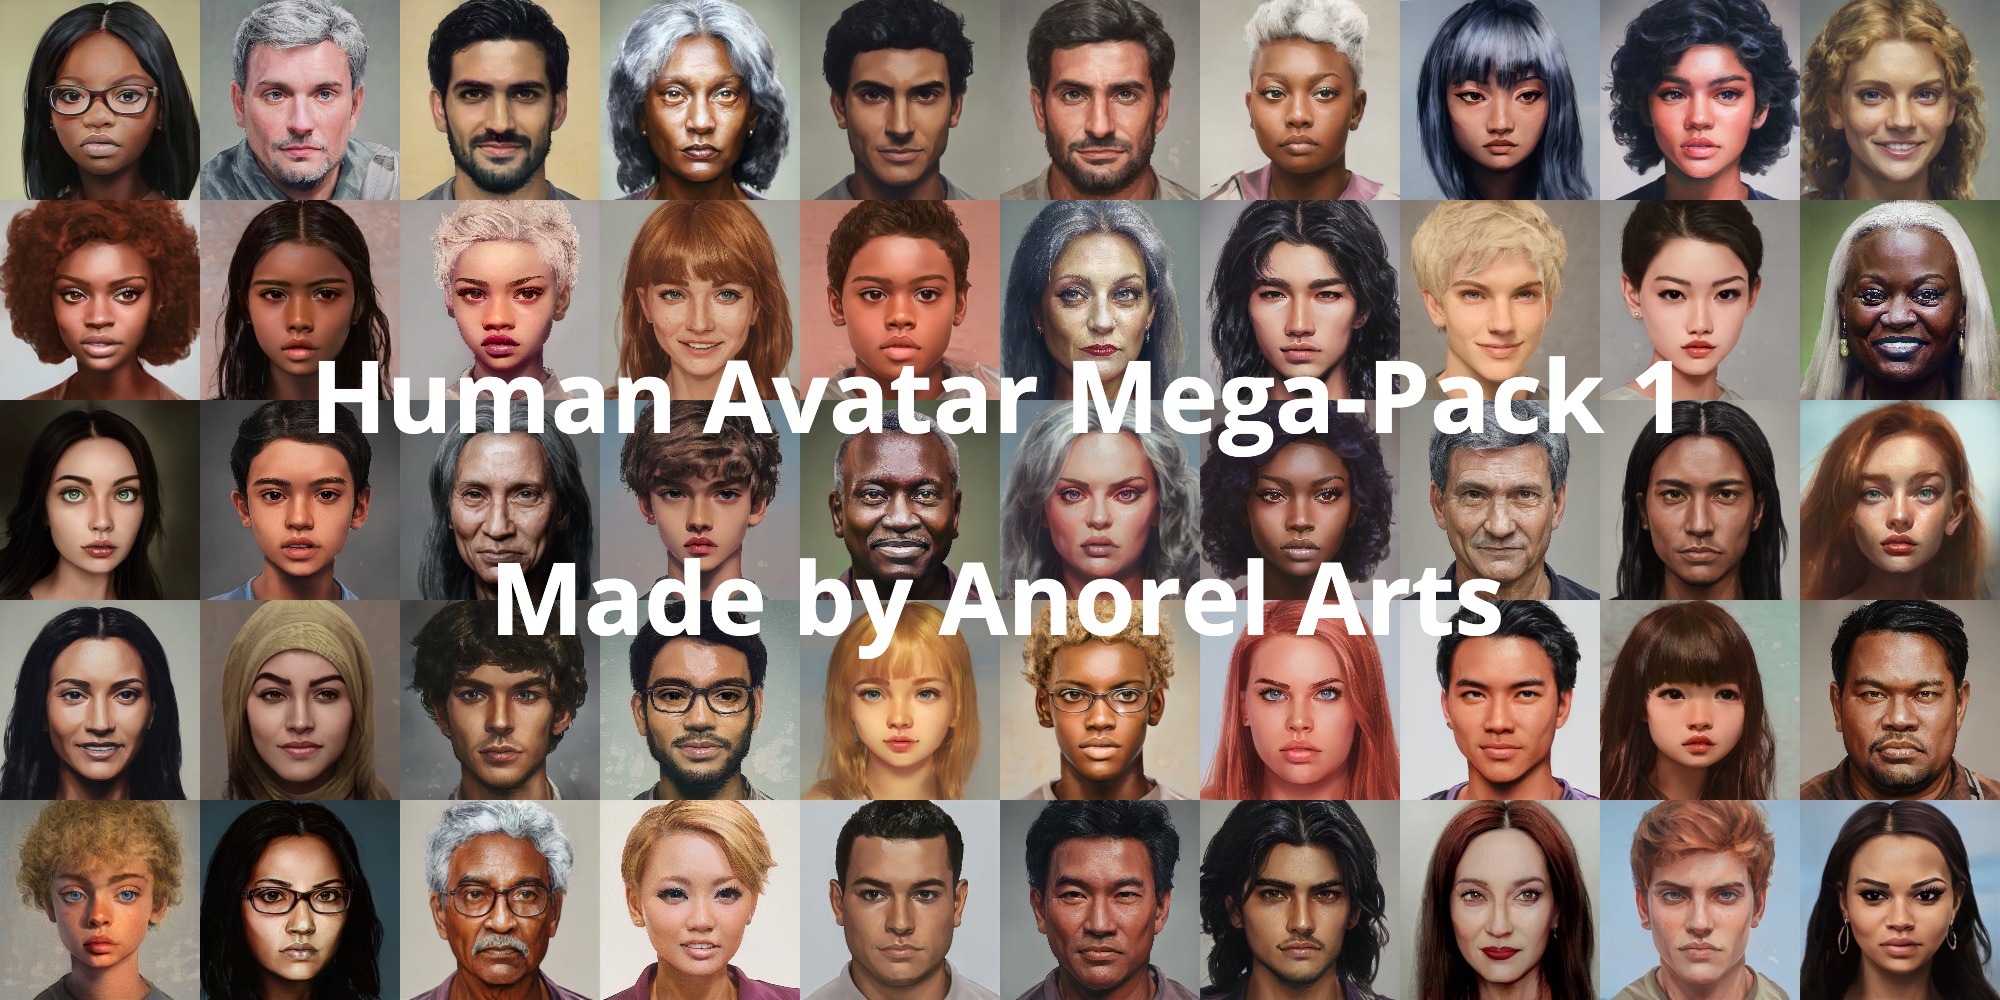 Human Avatar Mega-Pack 1